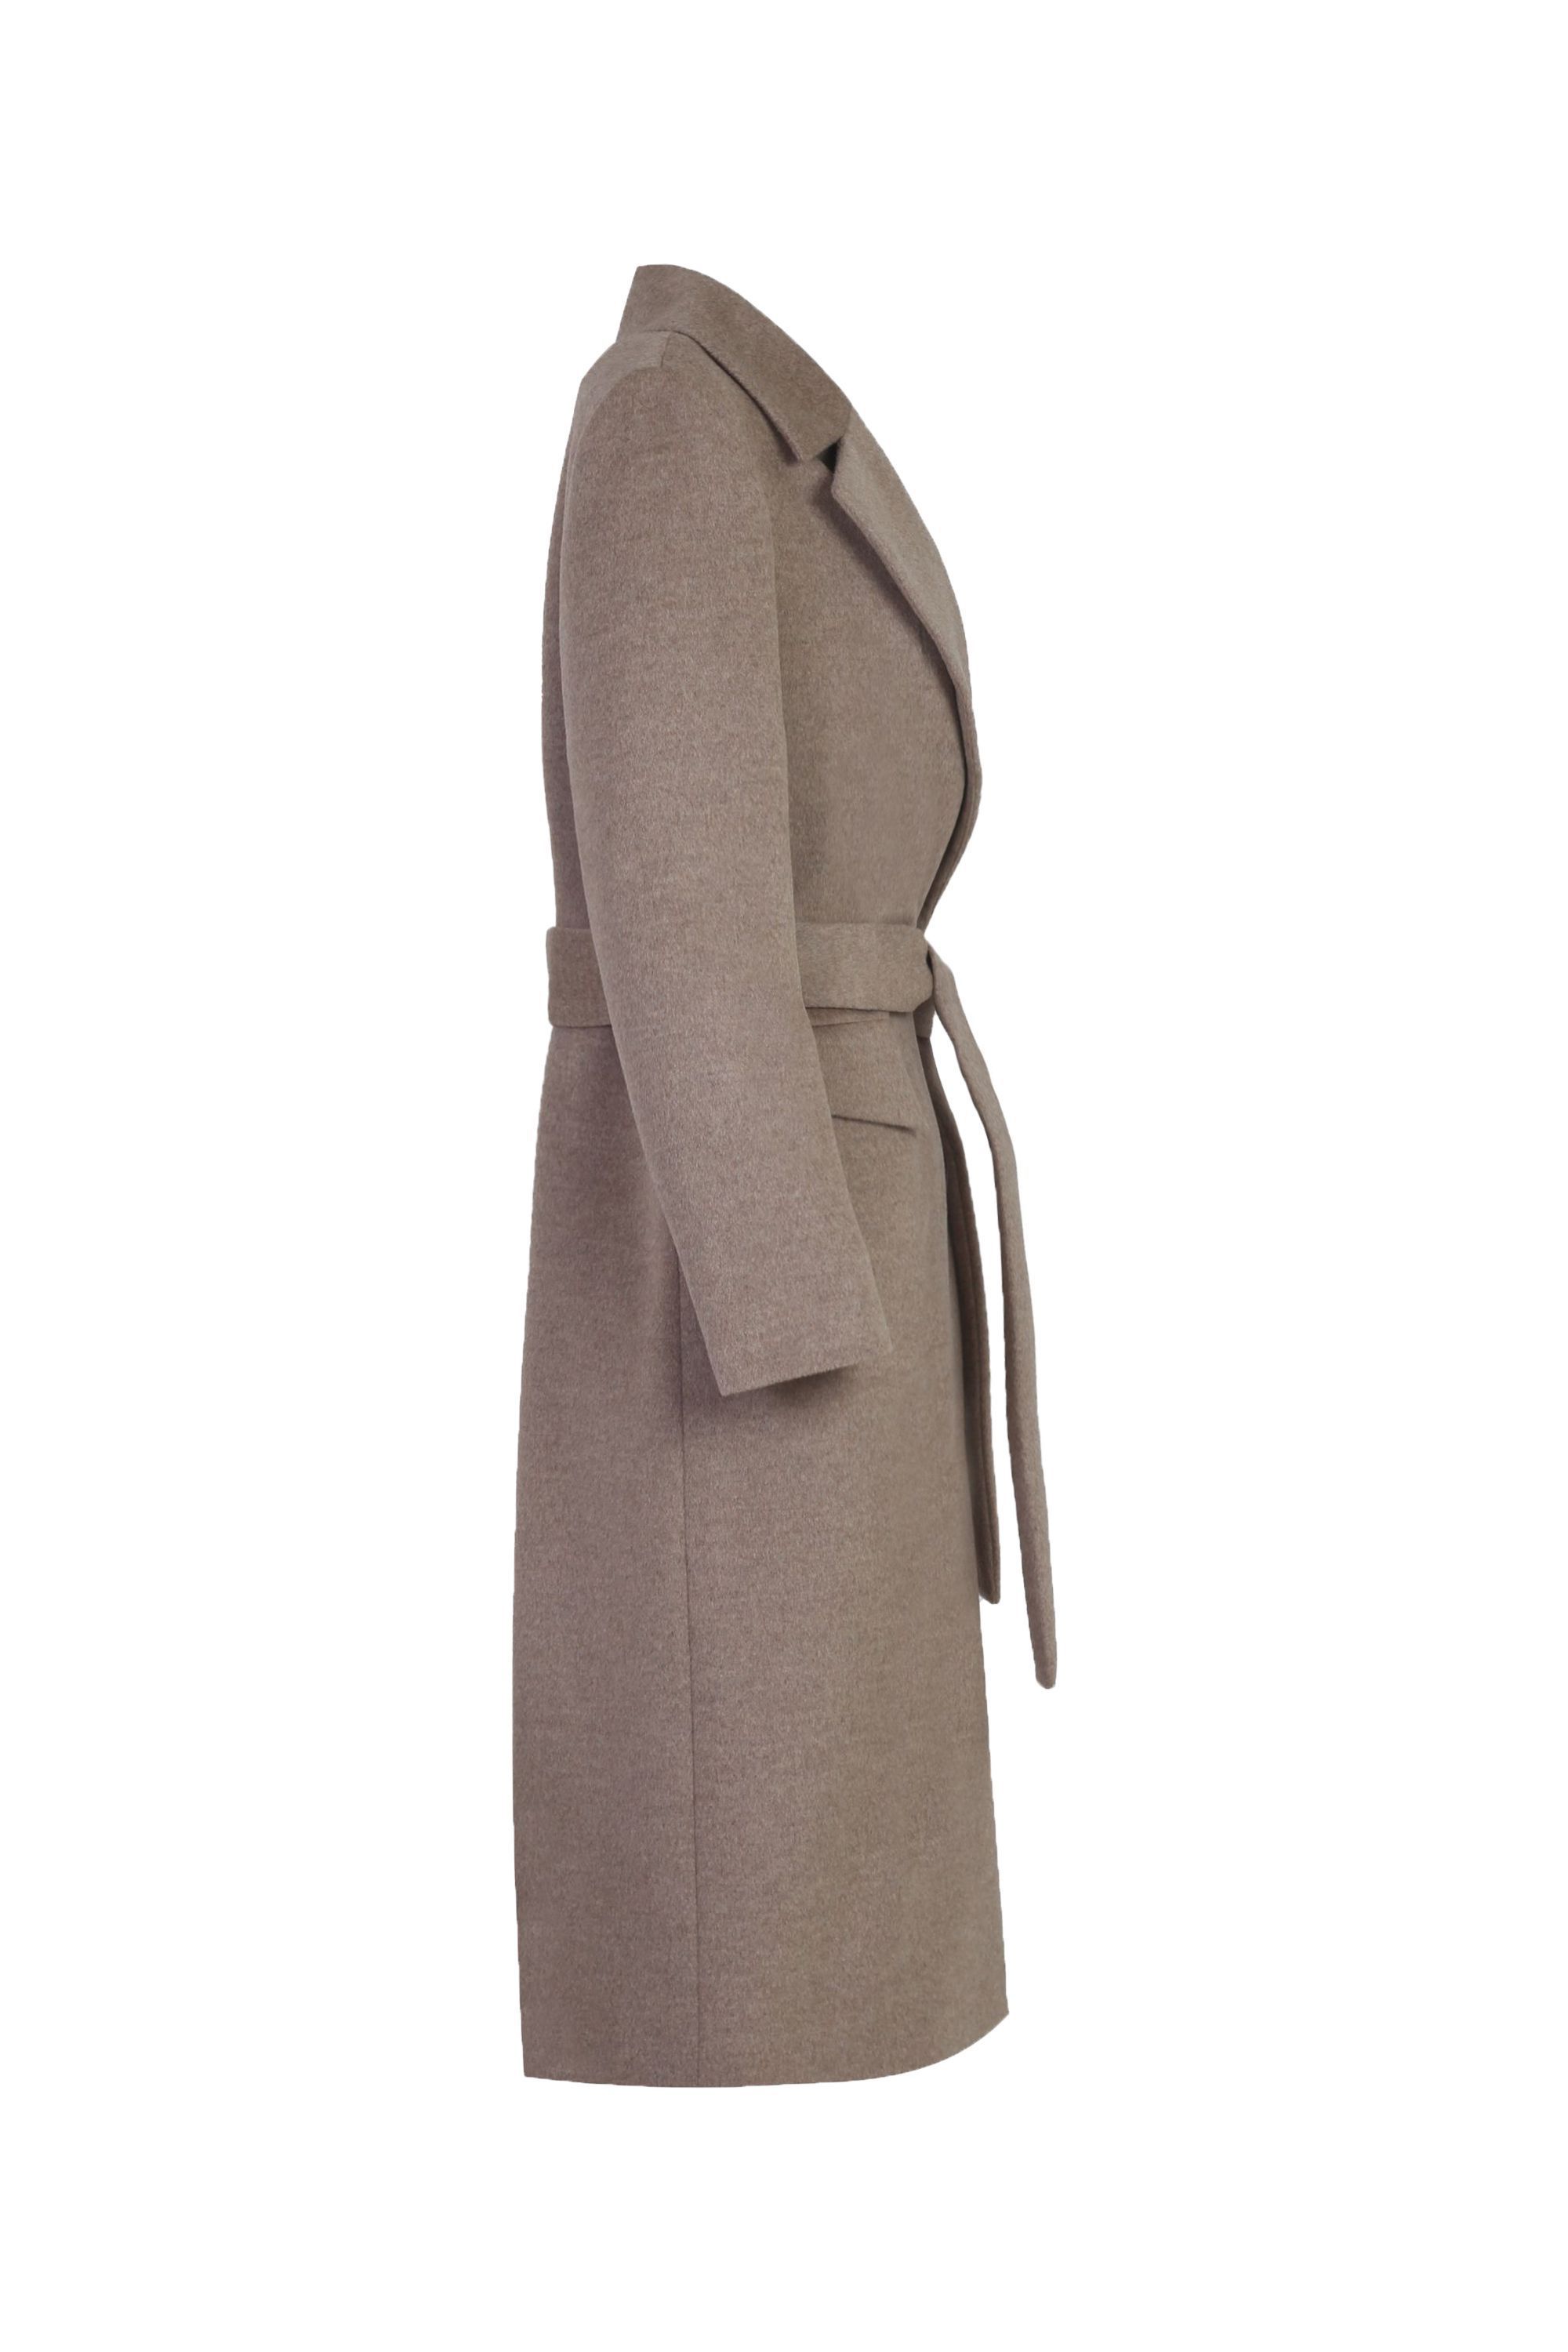 Пальто женское демисезонное 1-12253-1. Фото 2.